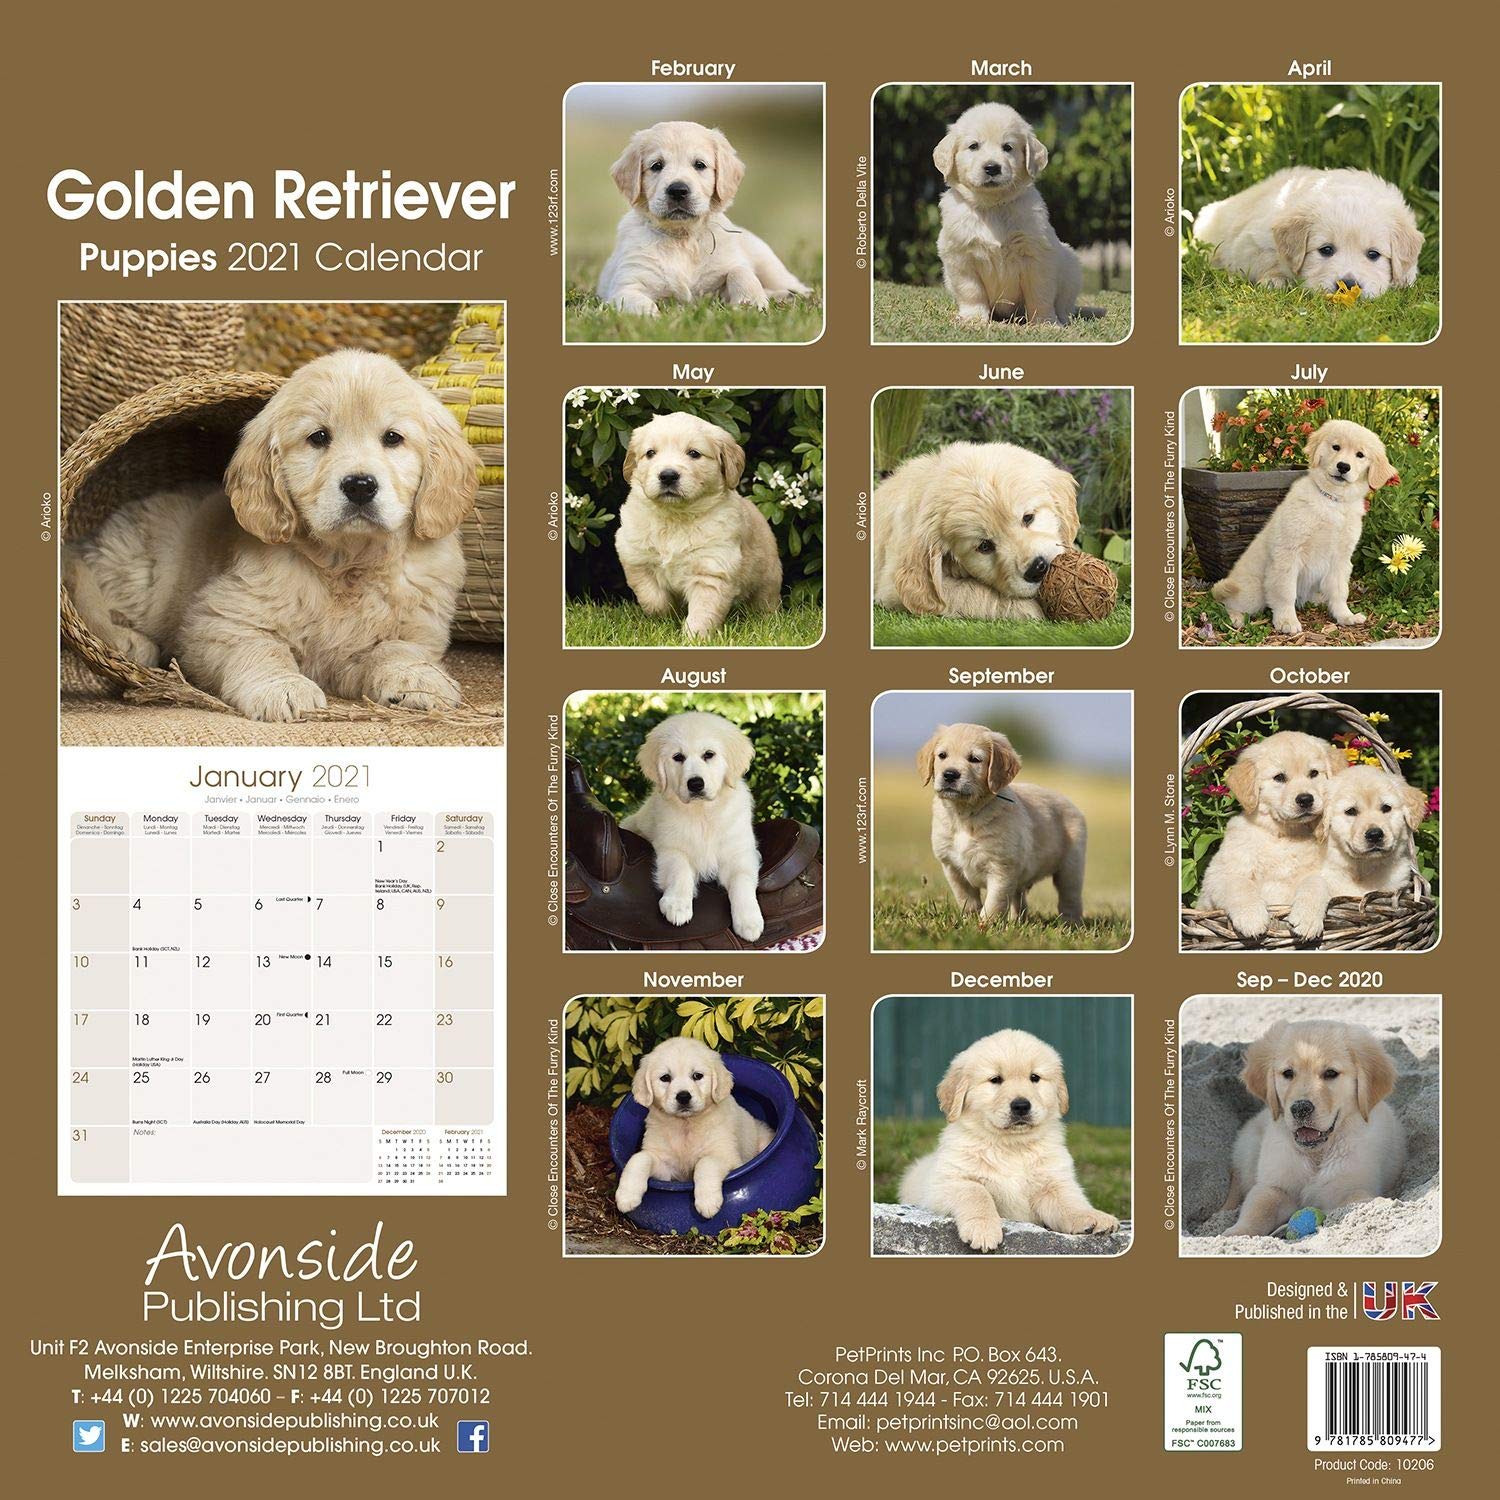 Golden Retriever Puppies 2021 Calendar Wall Size 30 x 30 cms NEW eBay